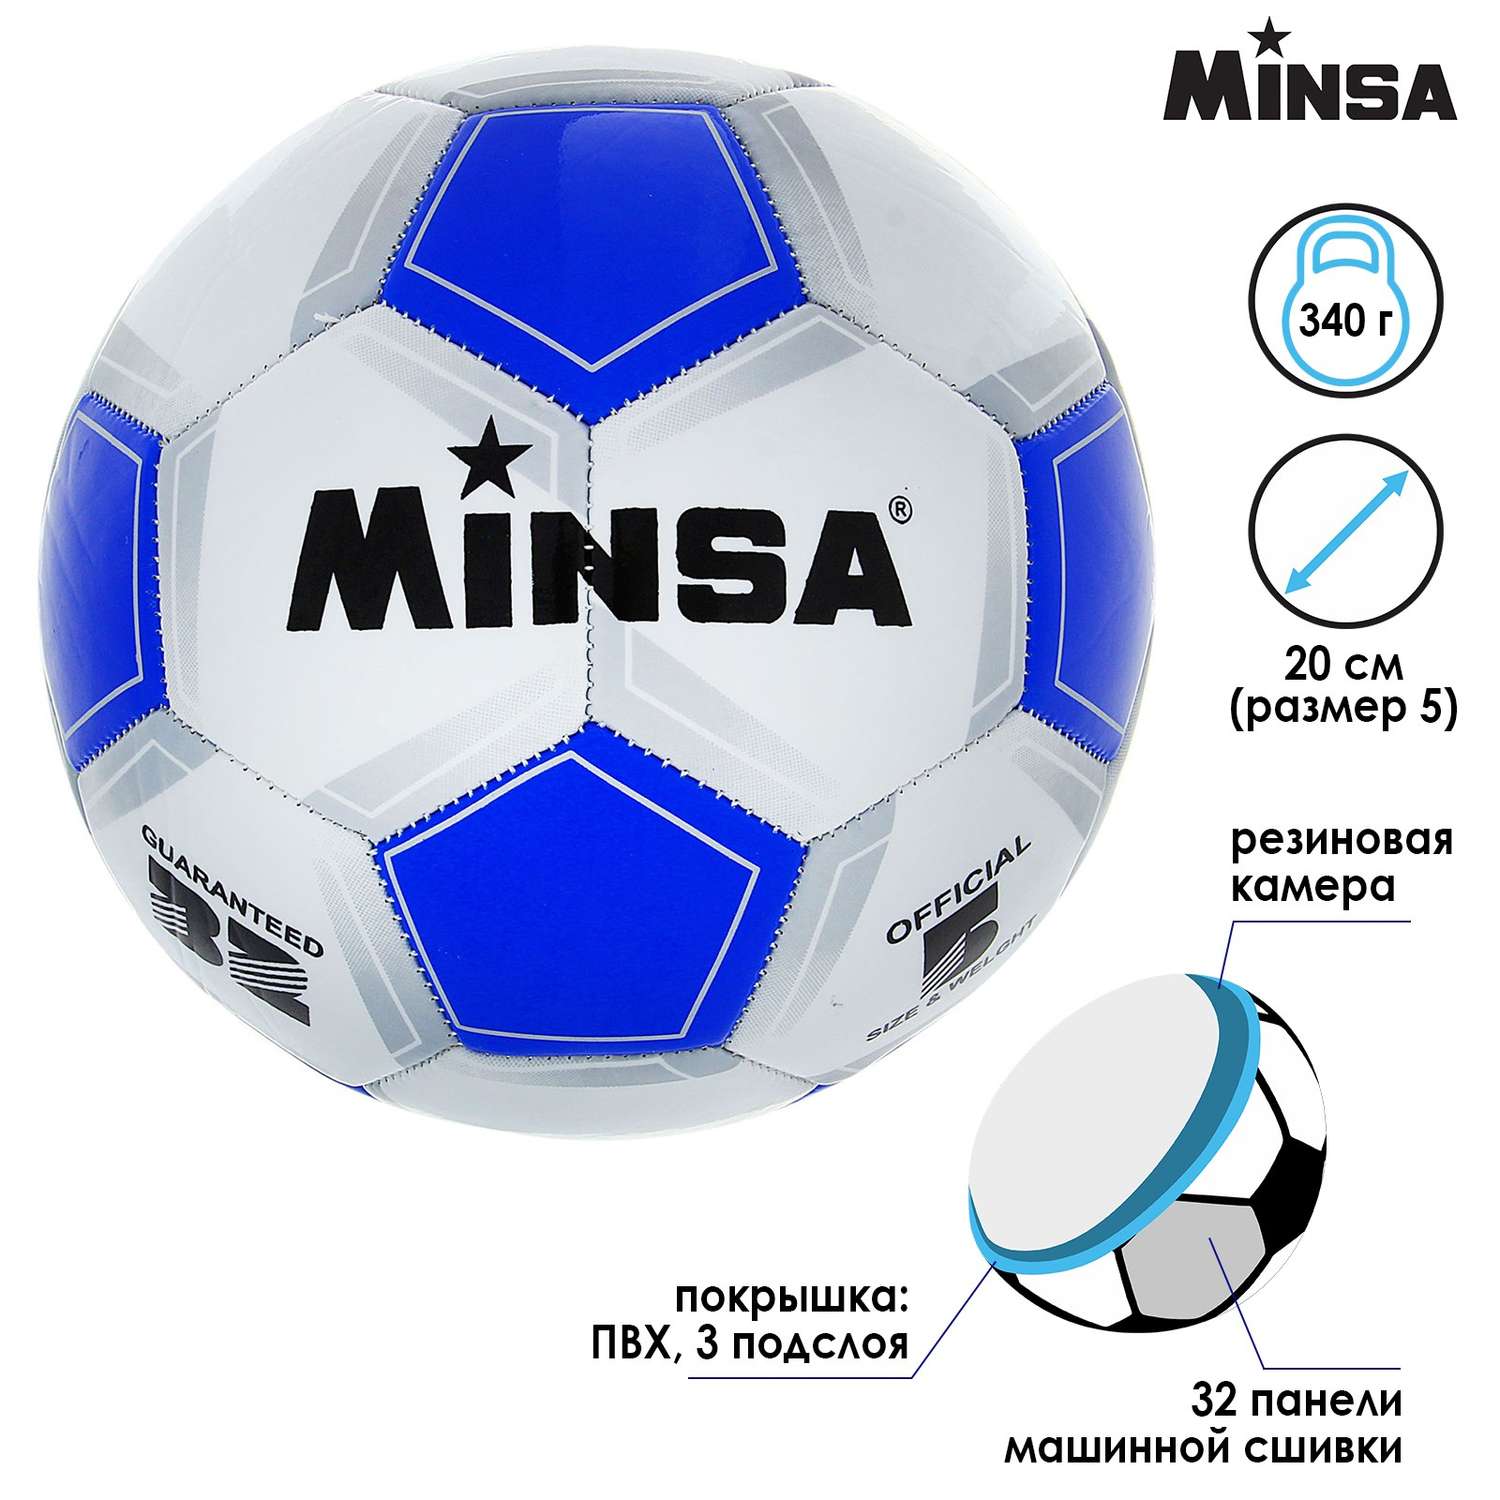 Мяч MINSA футбольный Classic. ПВХ. машинна сшивка. 32 панели. размер 5. 340 г - фото 2